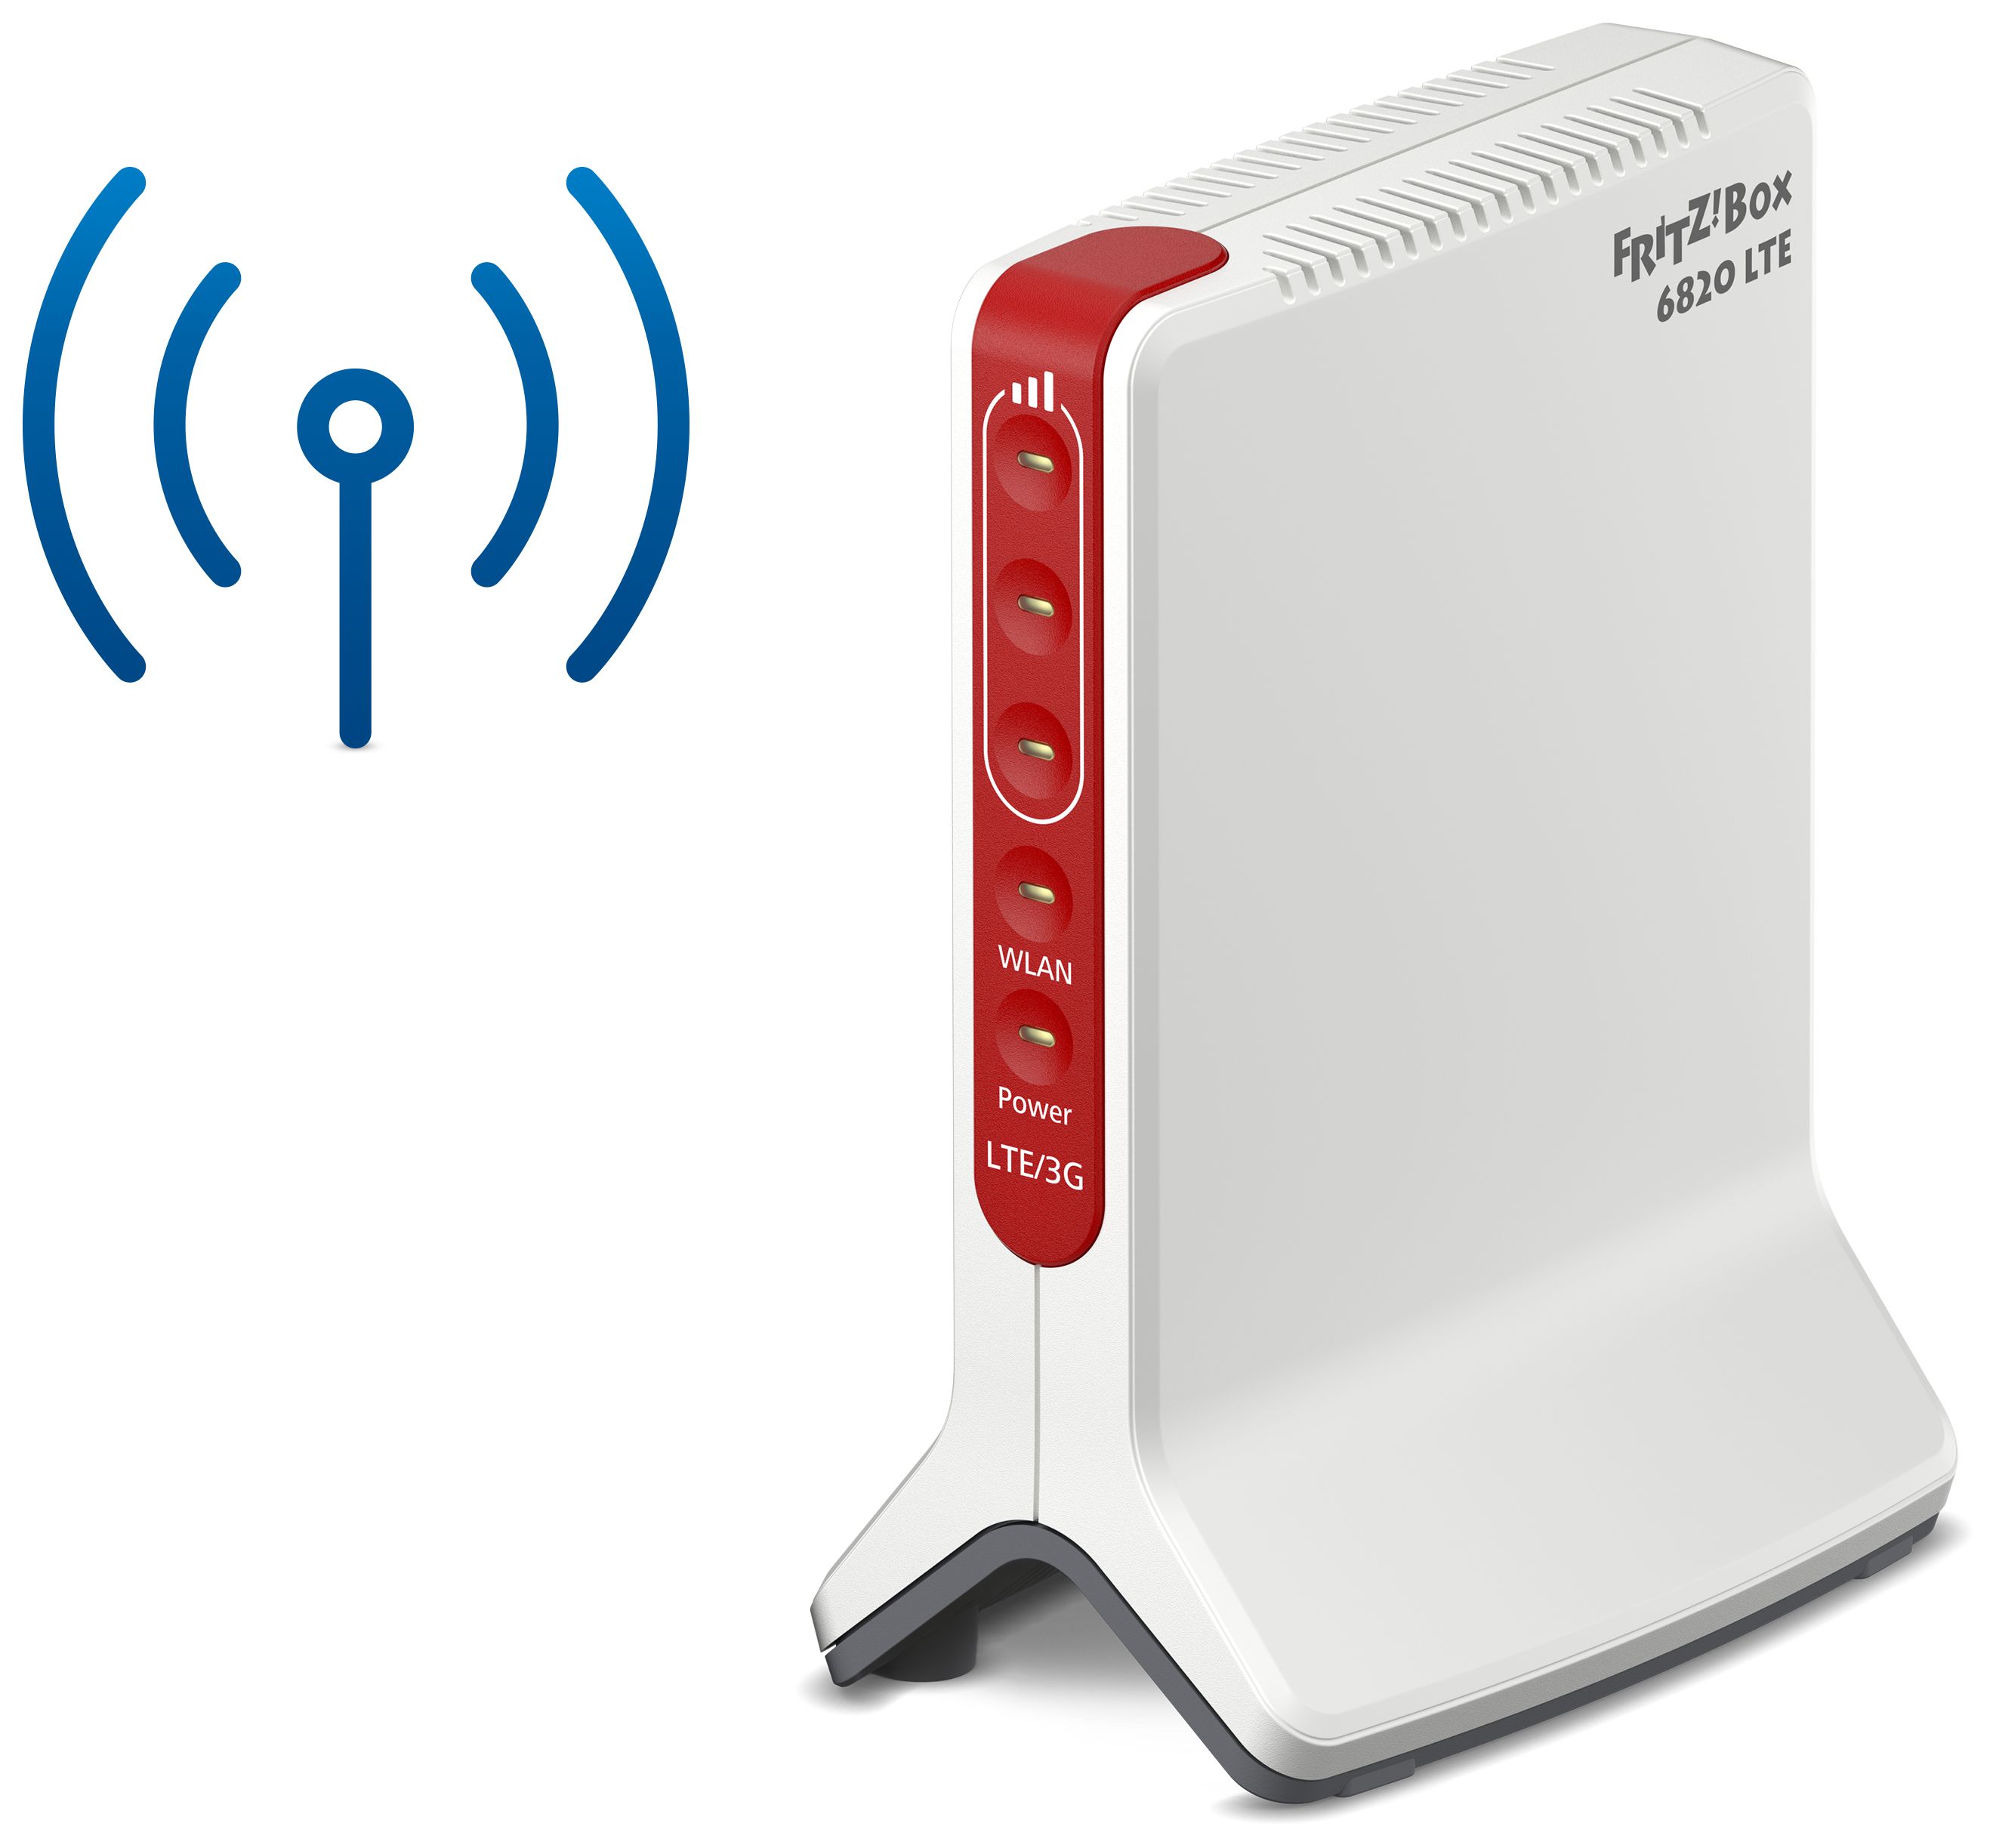 Wi-Fi expert FRITZ!Box Router Einzelband Technomarkt 6820 4 (2,4GHz) AVM von Mbit/s (802.11n) 450 LTE